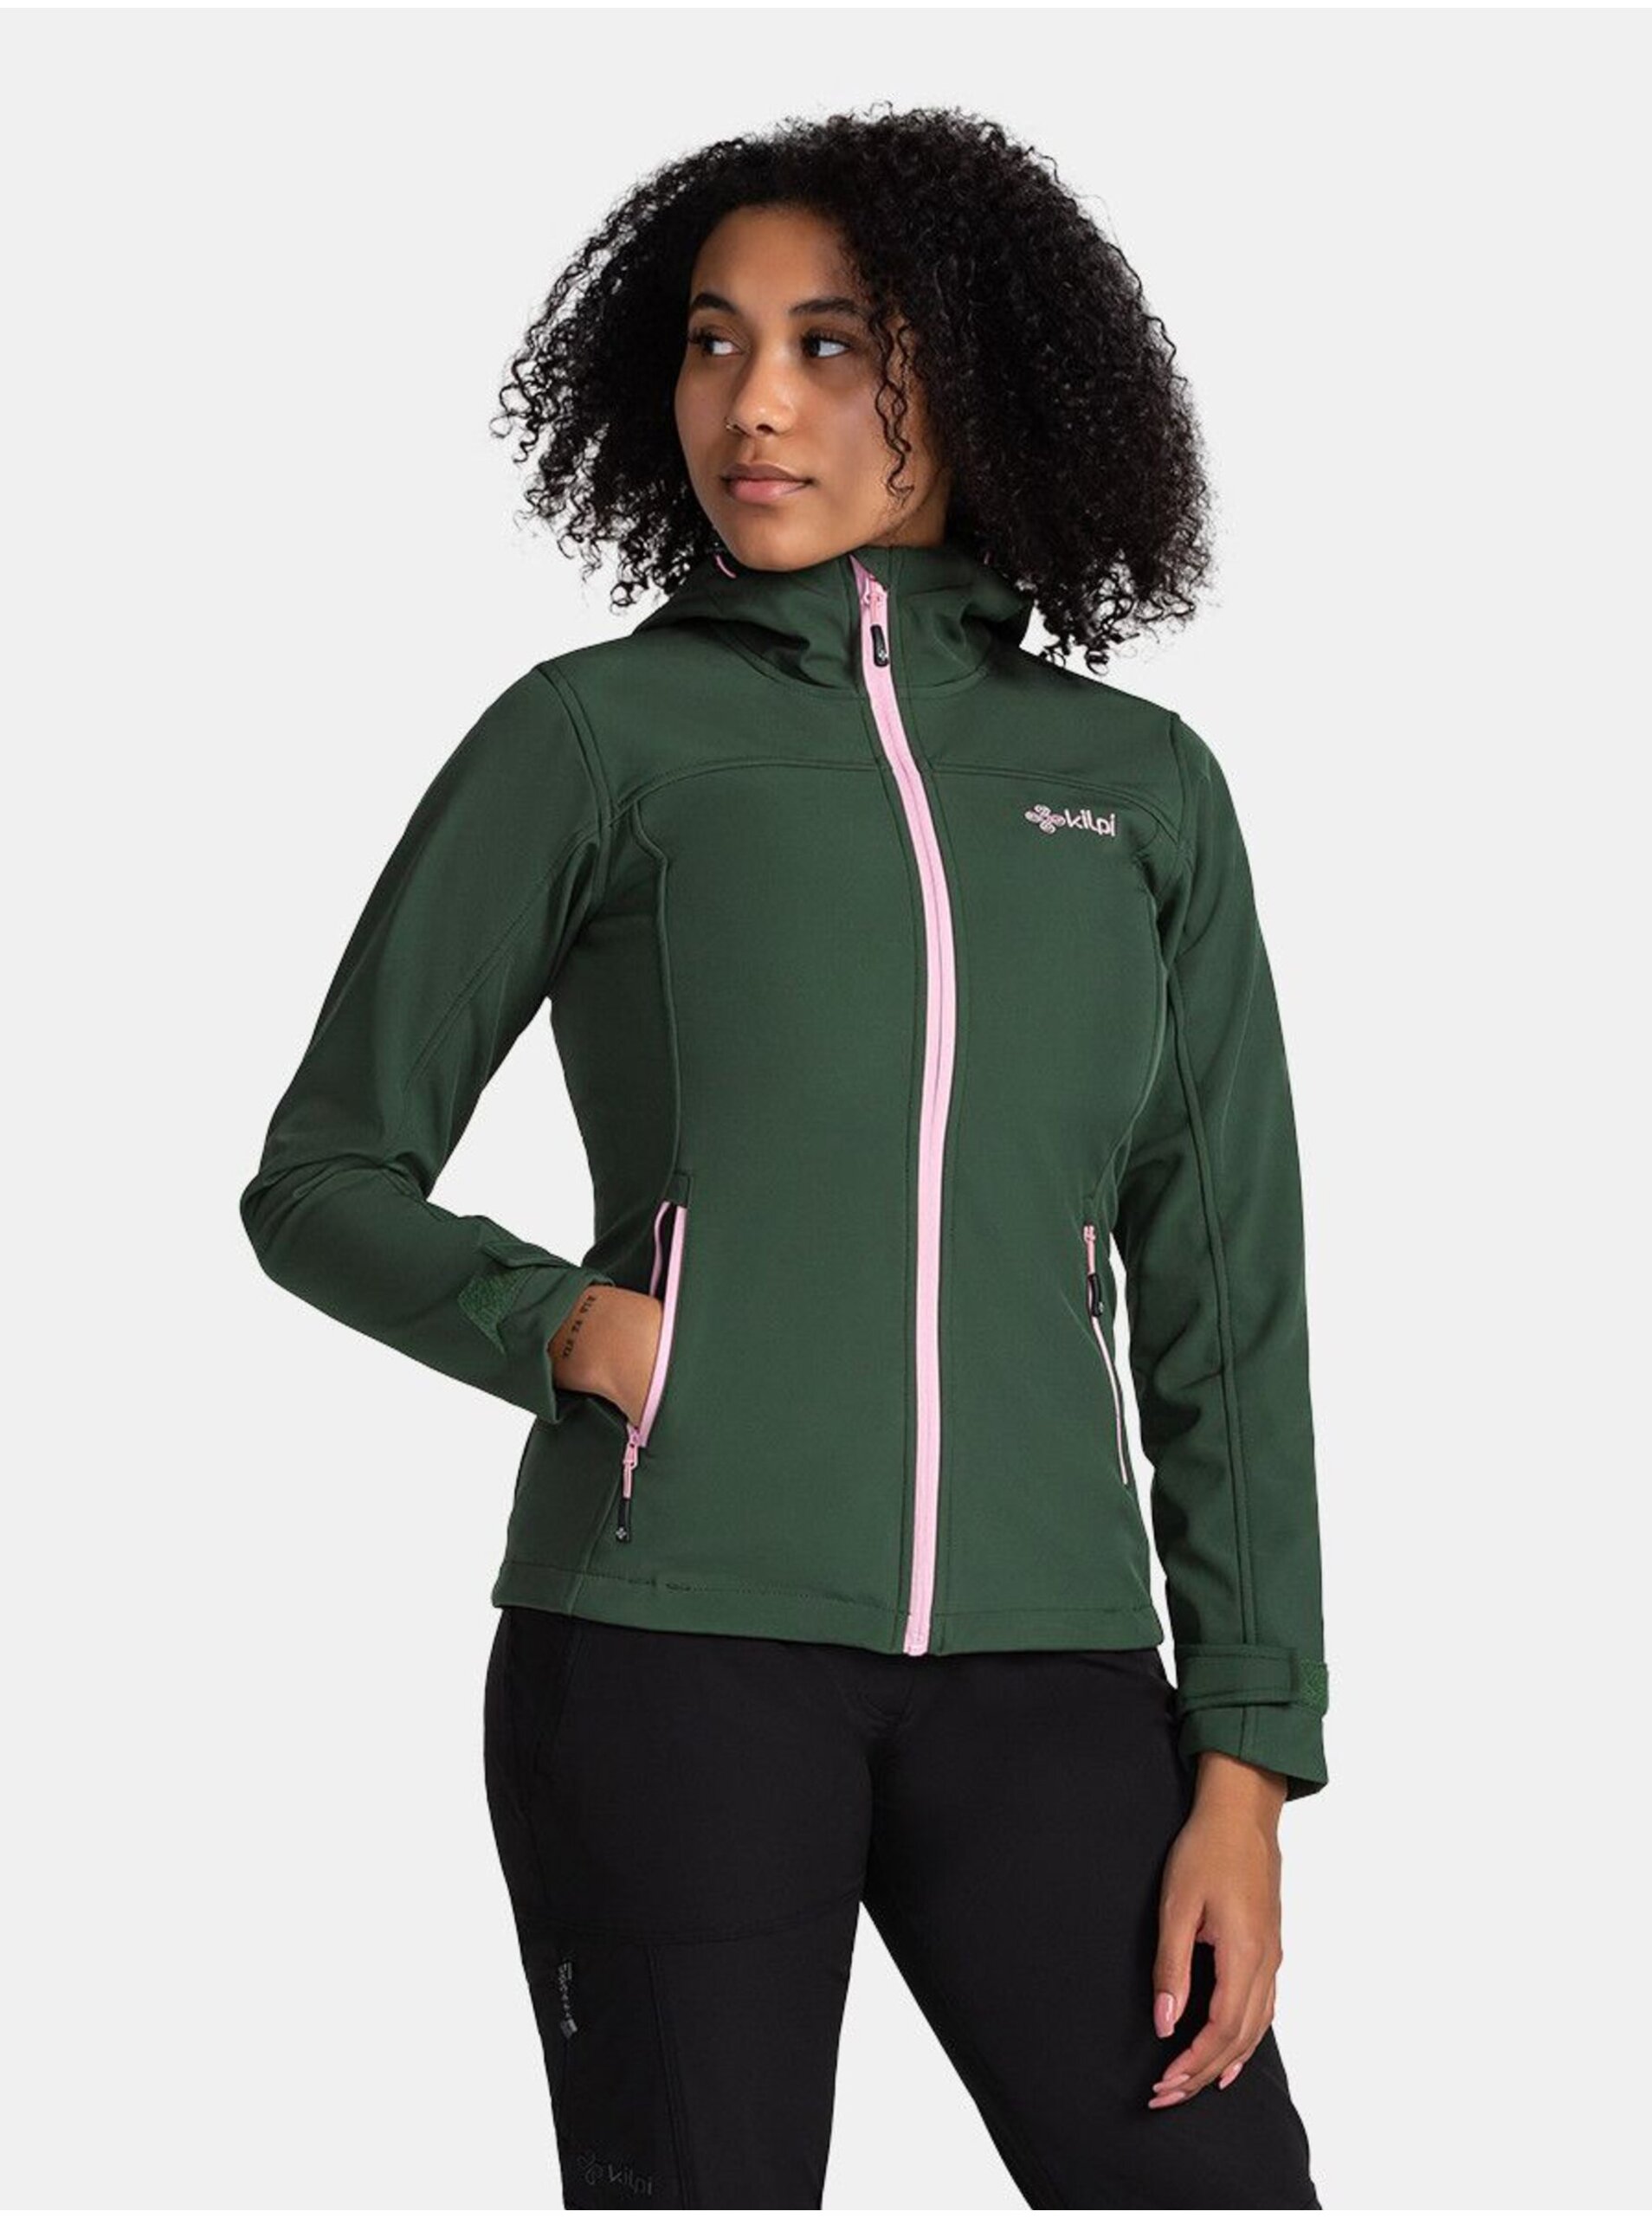 E-shop Tmavě zelená dámská softshellová bunda Kilpi Rawia